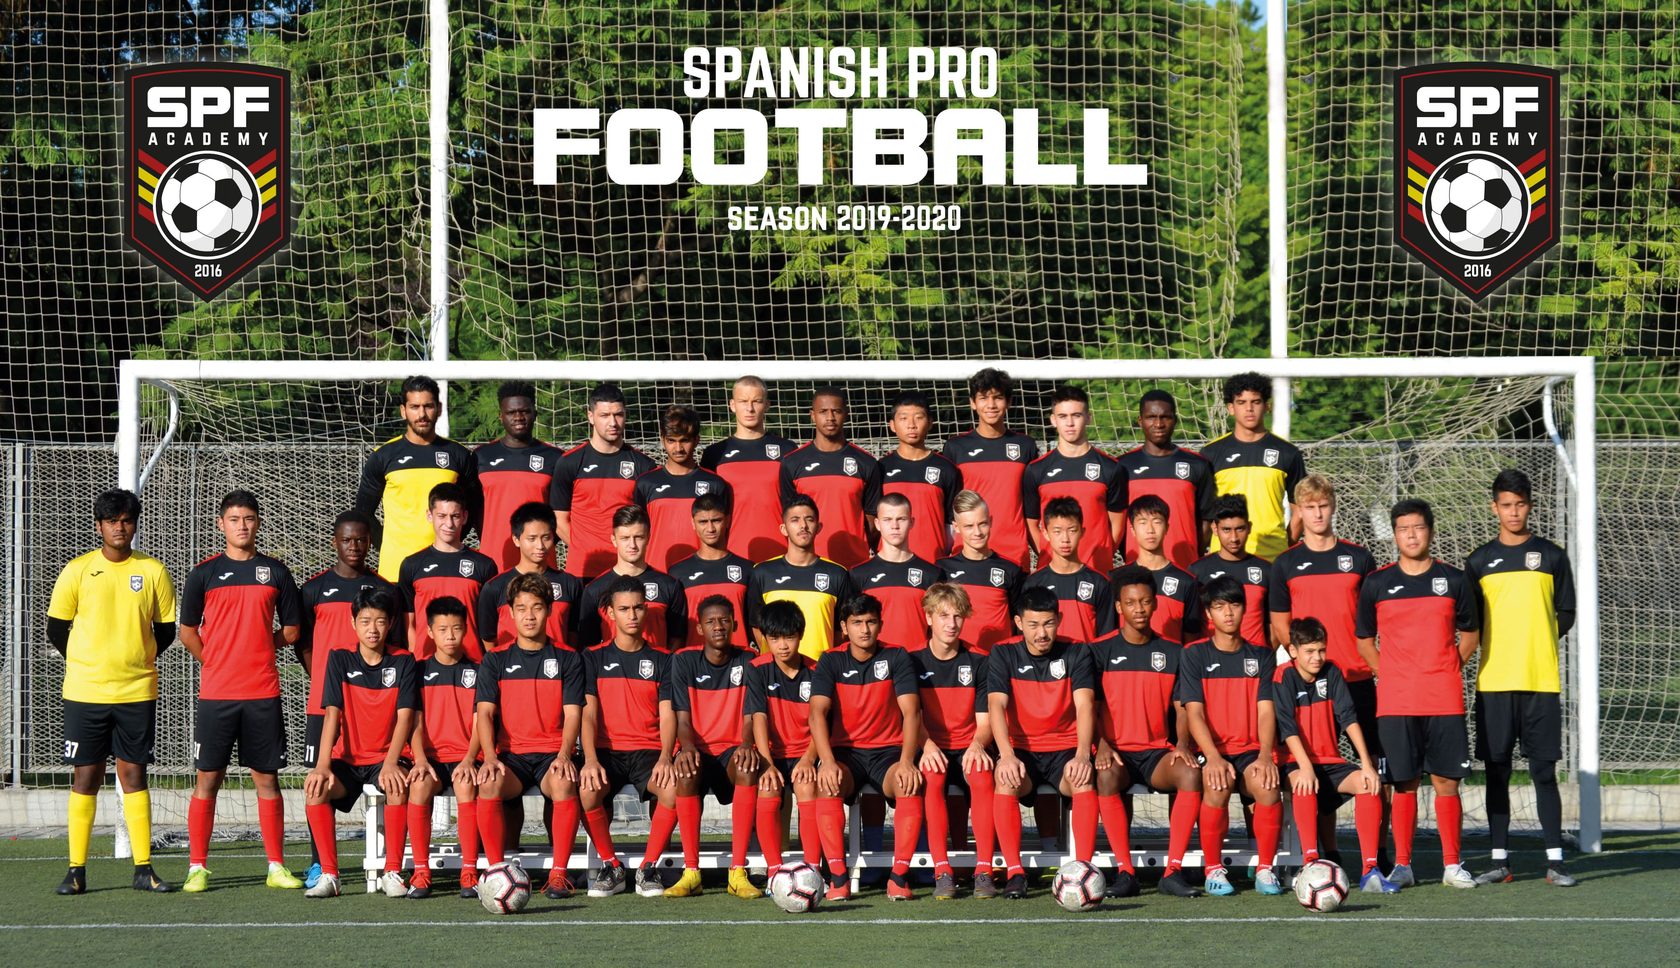 Футбольная академия в Испании, Футбольный лагерь в Испании, SPF, Spanish pro football